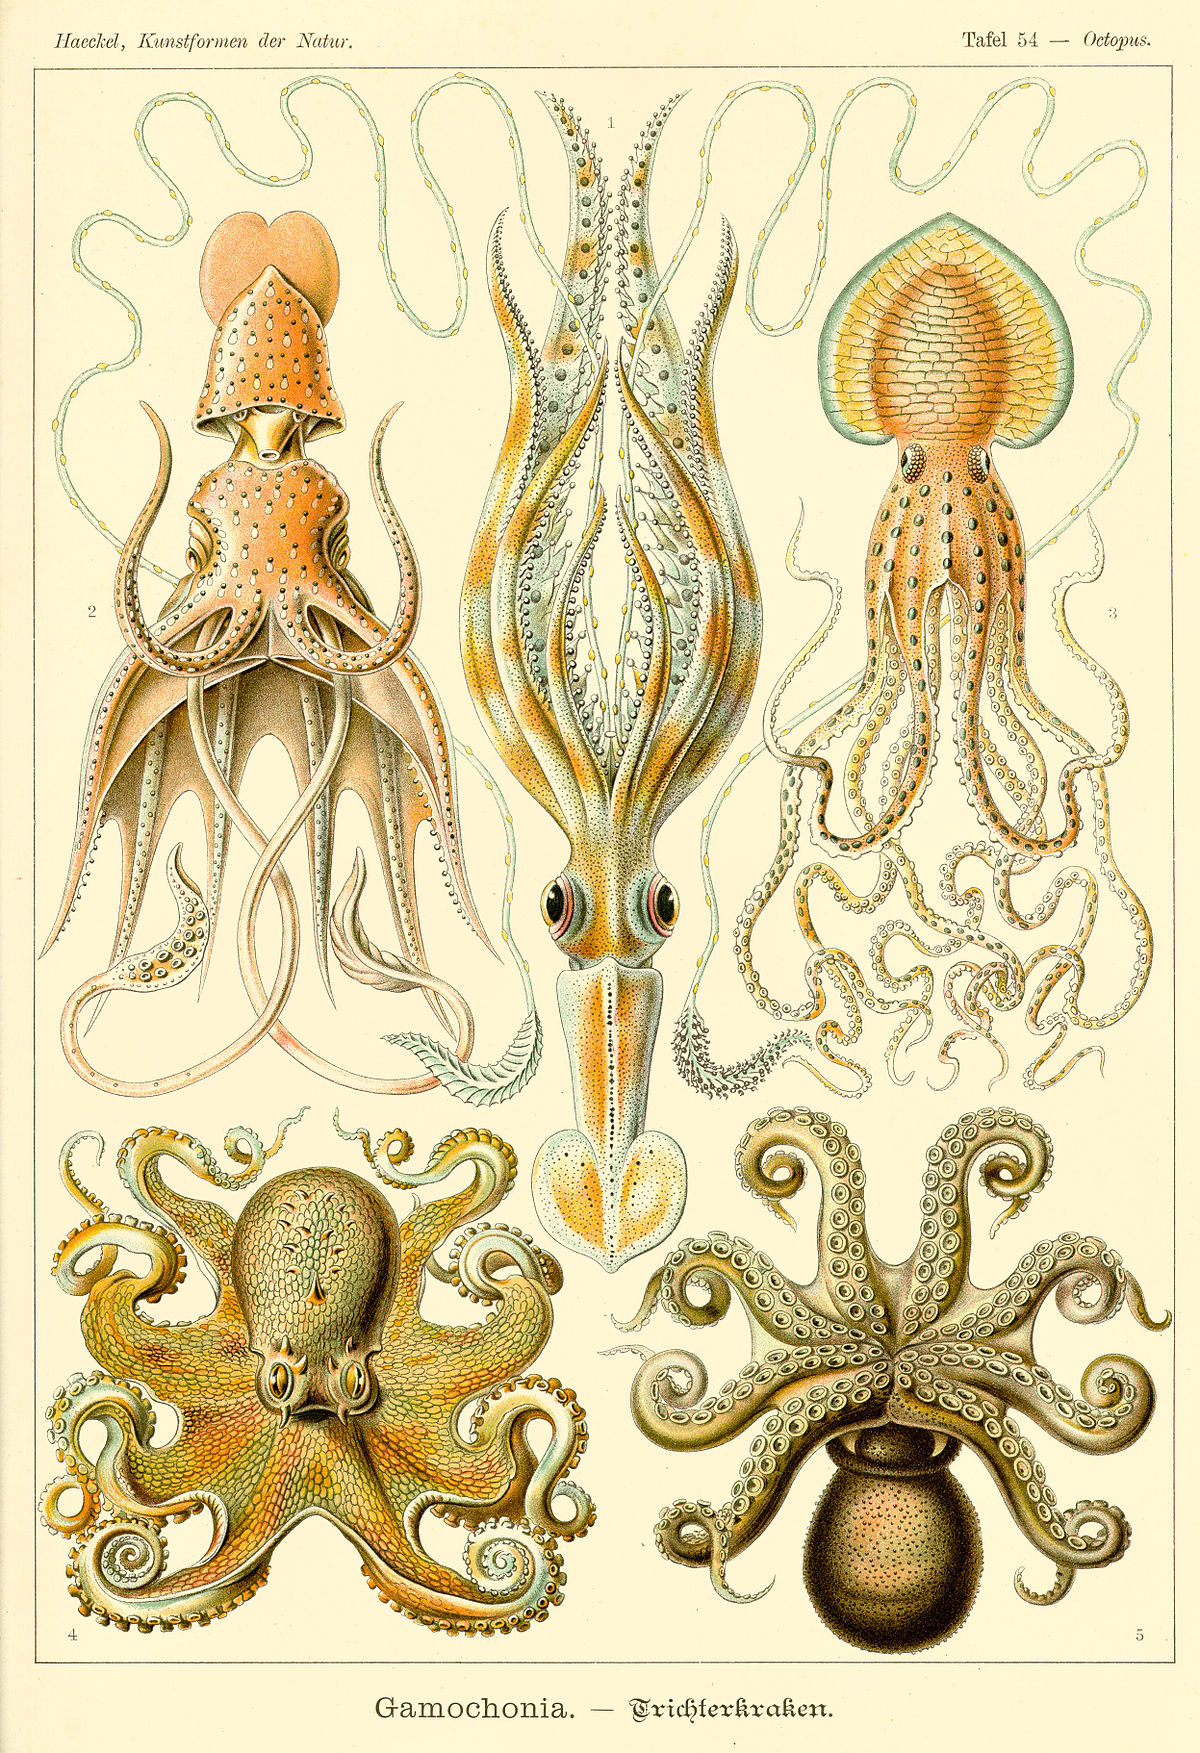 Planche de Ernst Haeckel concernant les céphalopodes